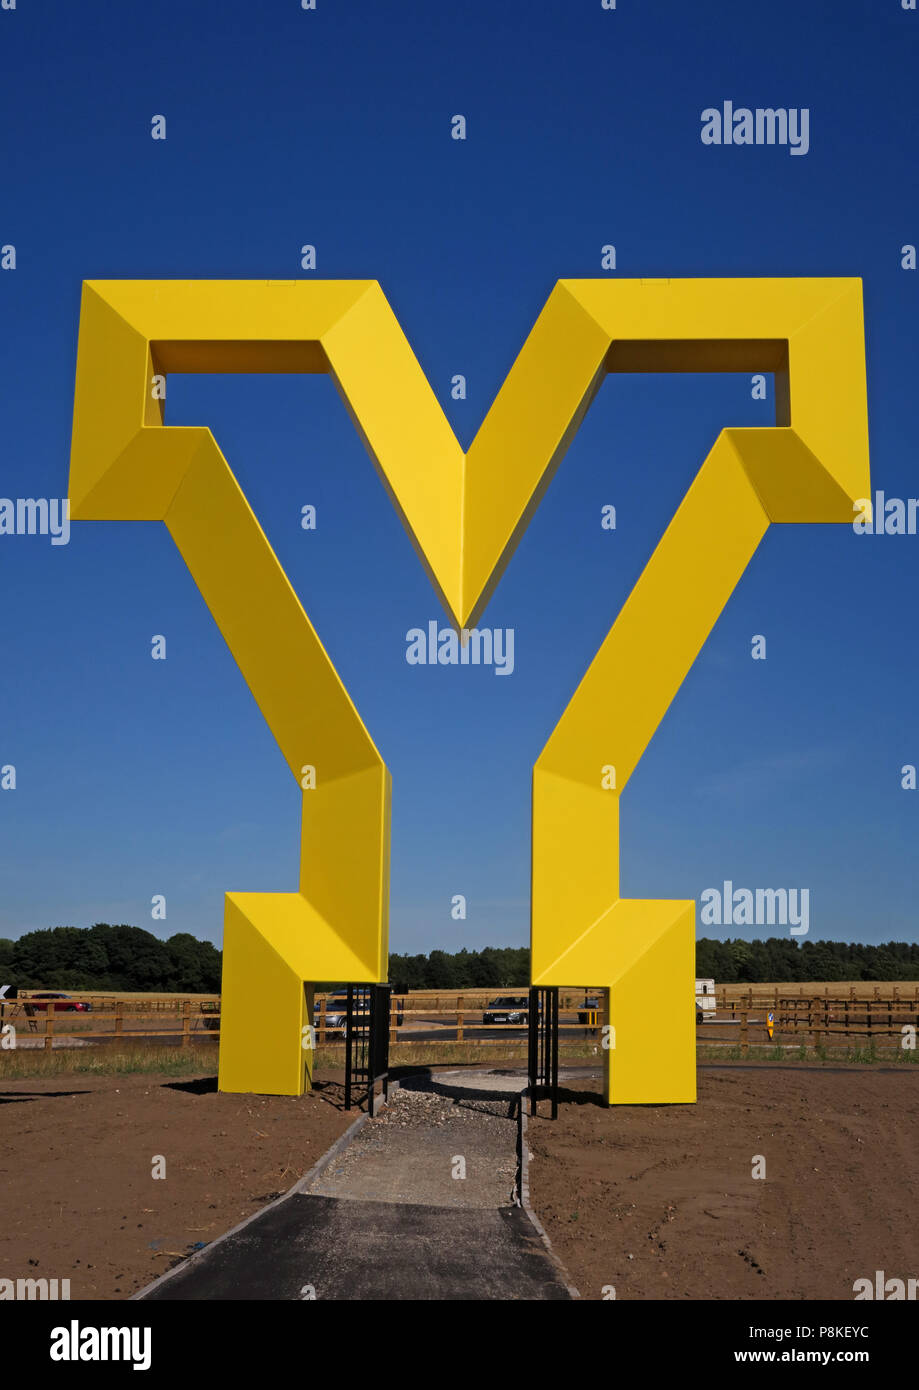 Big Yellow Y d'art, Bienvenue à la passerelle du Yorkshire, Bawtry Road, Rossington , South Yorkshire, Angleterre, Royaume-Uni, DN11 0GT (Portrait) Banque D'Images